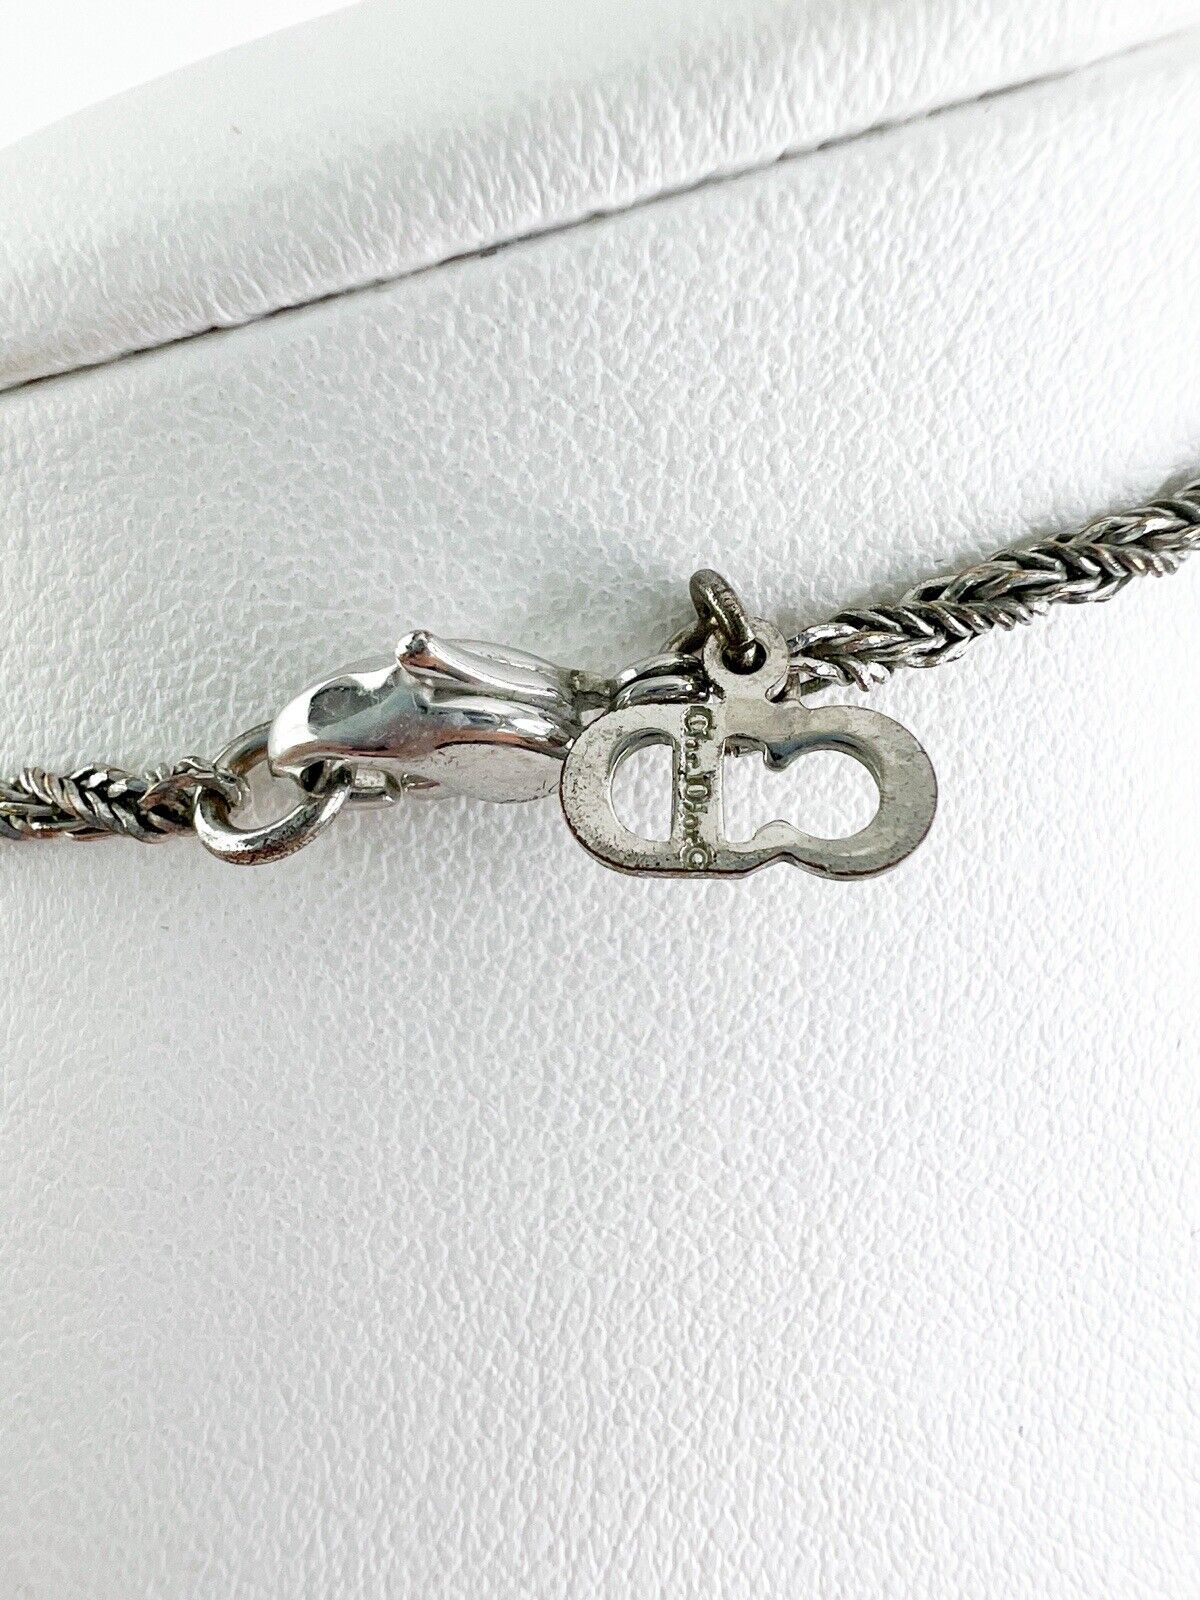 Vintage Christian Dior necklace,  CD Dior necklace, CD logo necklace, Choker Necklace Silver, Gift for her, Vintage Jewelry, Necklace Silver